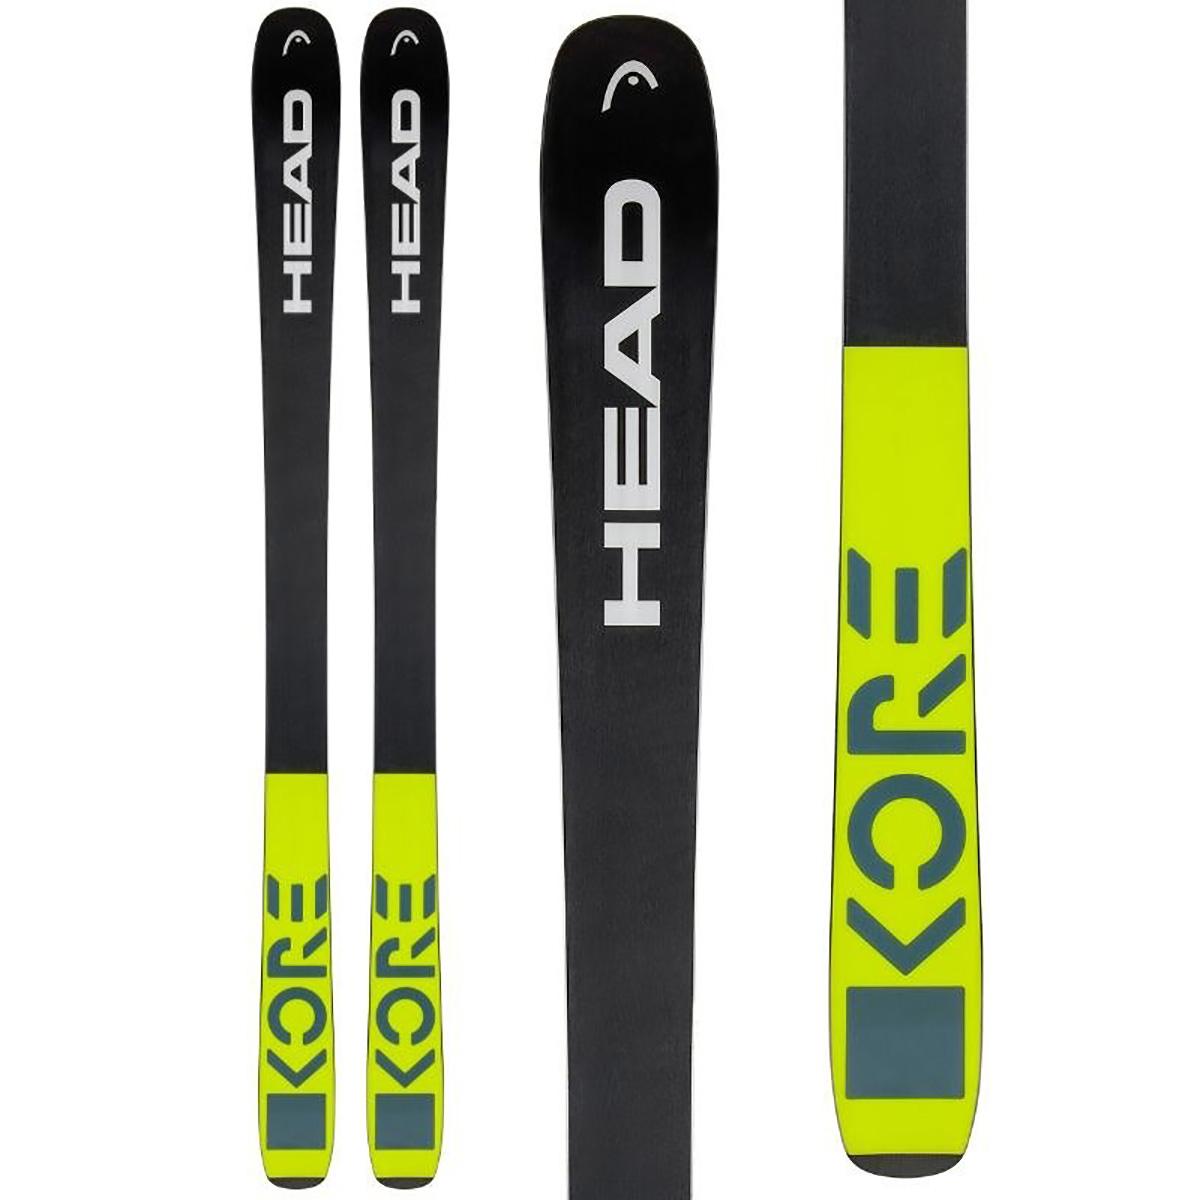 Head Kore 93 Ski